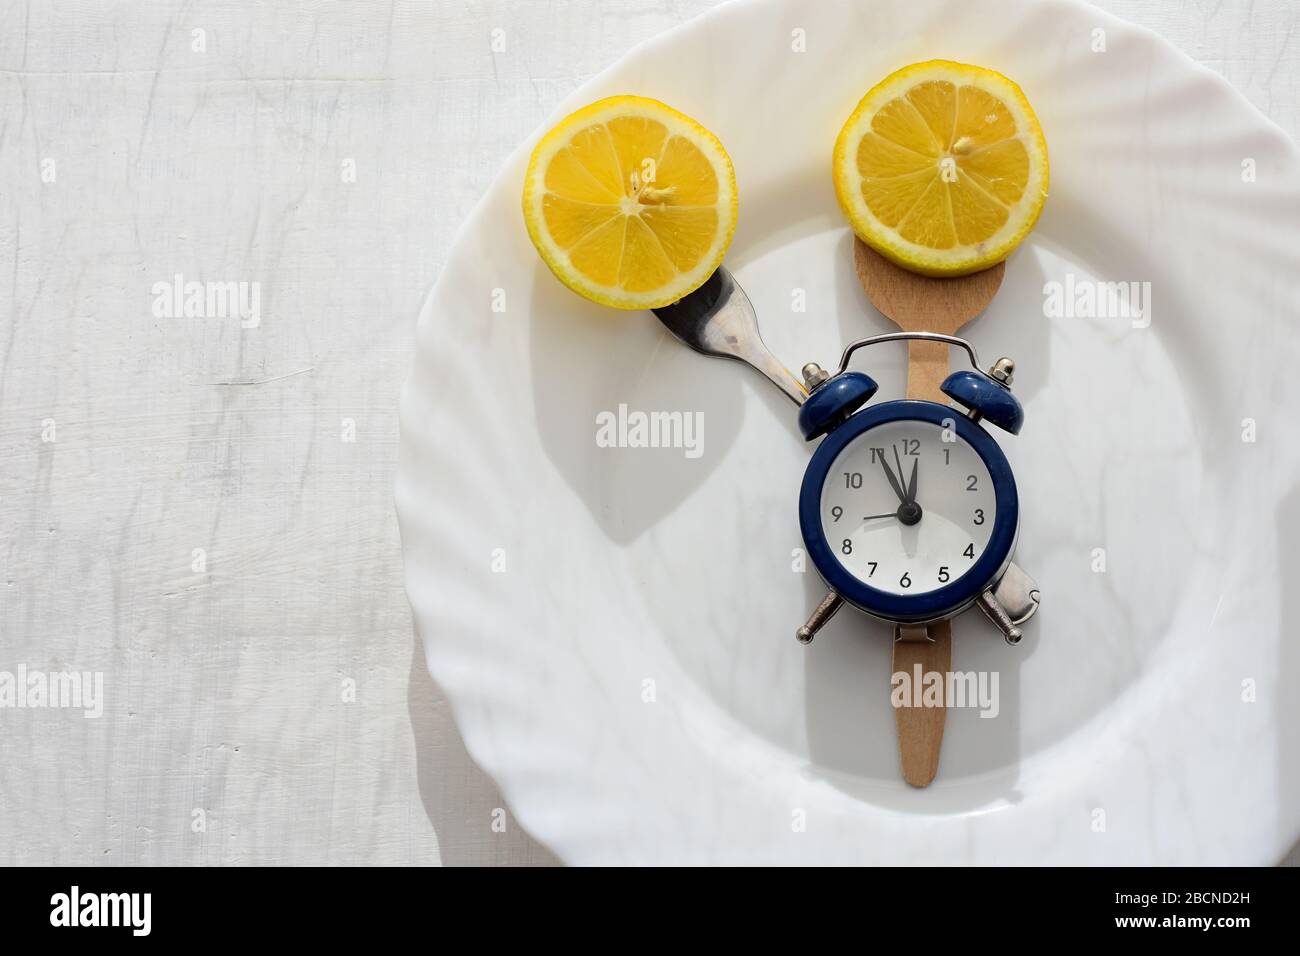 Limón fresco en plato blanco, cubiertos y reloj despertador servido para la  cena o almuerzo / Tiempo para perder peso / Comer control / dieta concepto  Fotografía de stock - Alamy